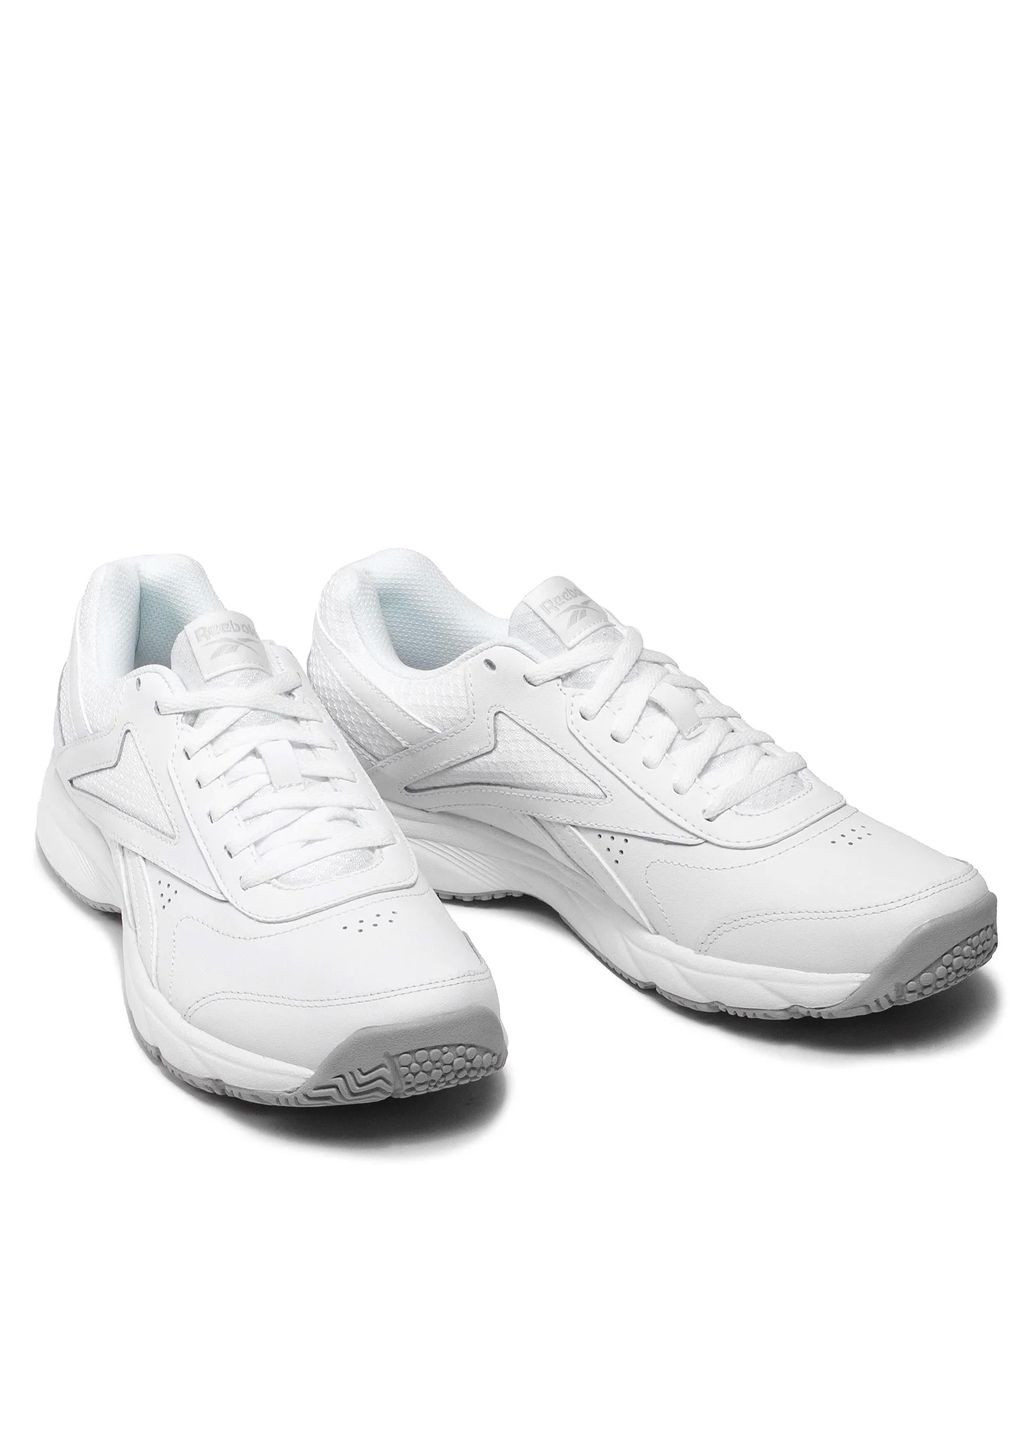 Белые кроссовки мужские белые кожаные Reebok FU7354